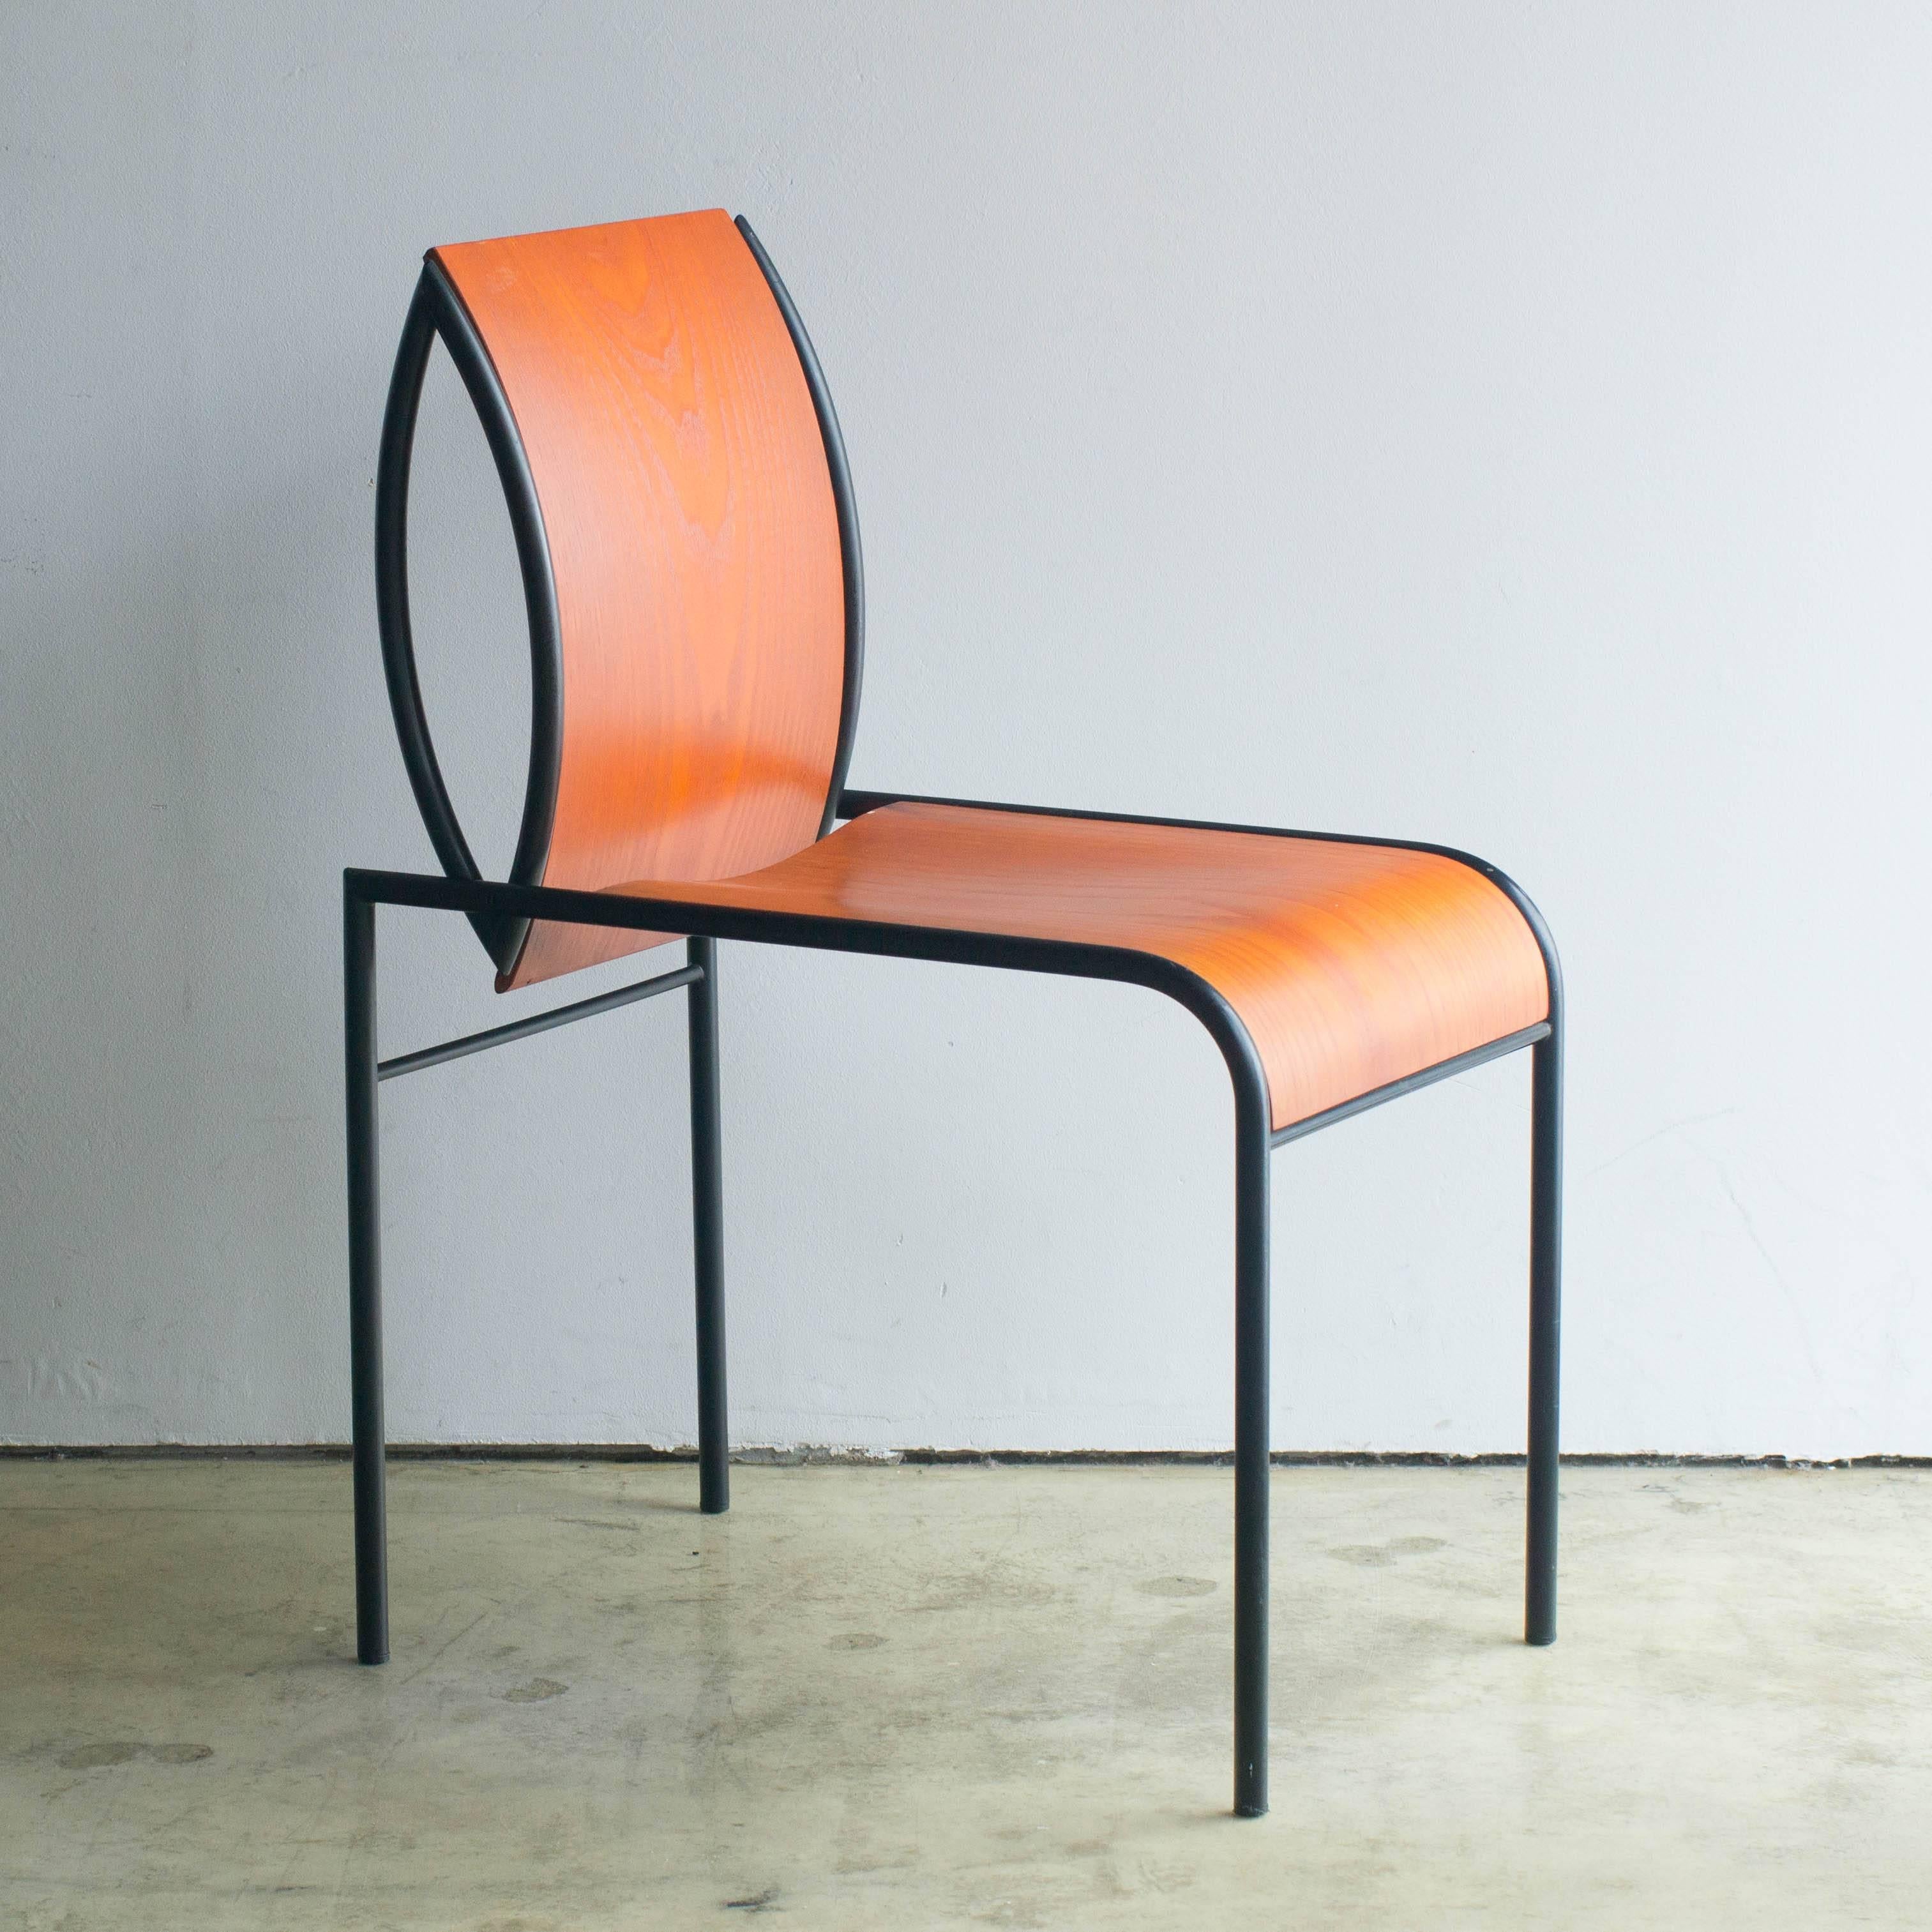 Stuhl Kim, entworfen von Michele De Lucchi im Jahr 1987. Hergestellt aus einem einzigartig geformten schwarzen Stahlrahmen und gebogenem Sperrholz für Rücken und Sitz. Das Memphis-Logo ist auf der Rückseite des Sitzes angebracht. Dieses Logo wird